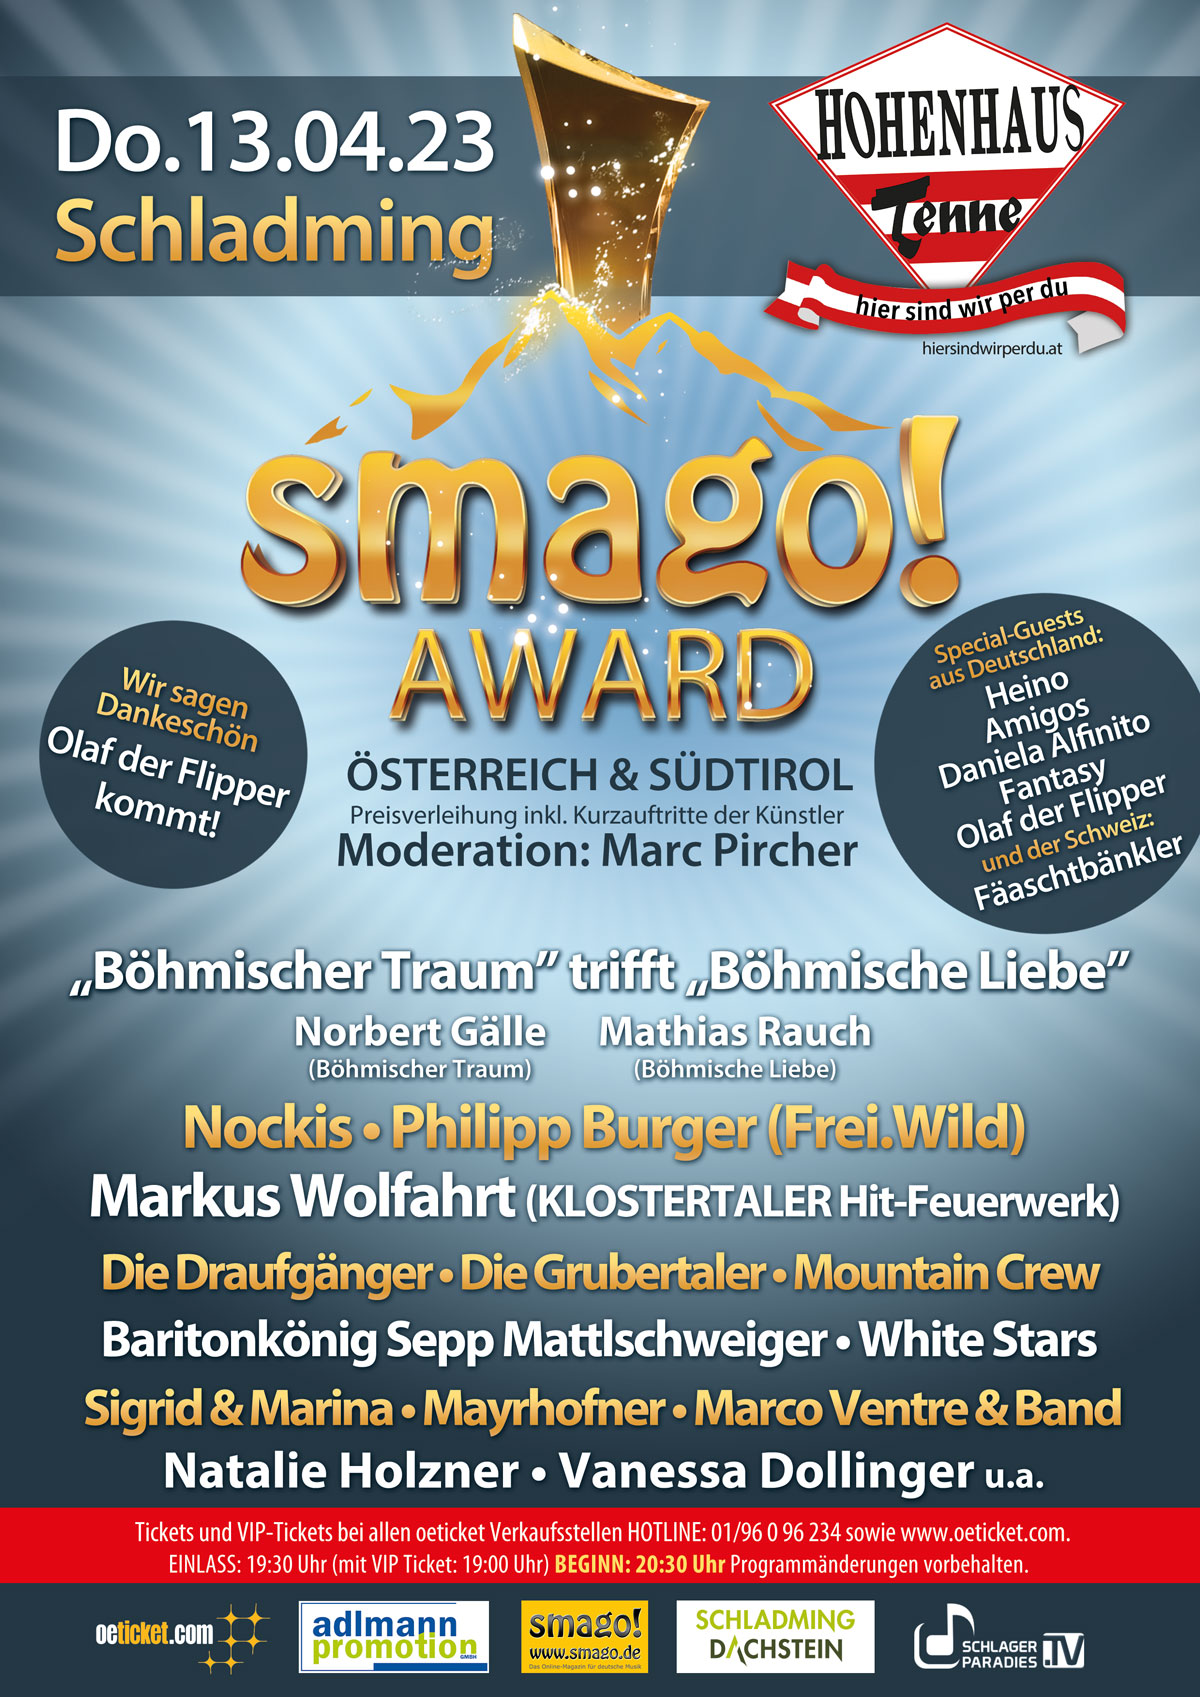 smago! Award Österreich & Südtirol 3.0 (Event) *** Am 13.04.2023 in der Hohenhaus Tenne in Schladming